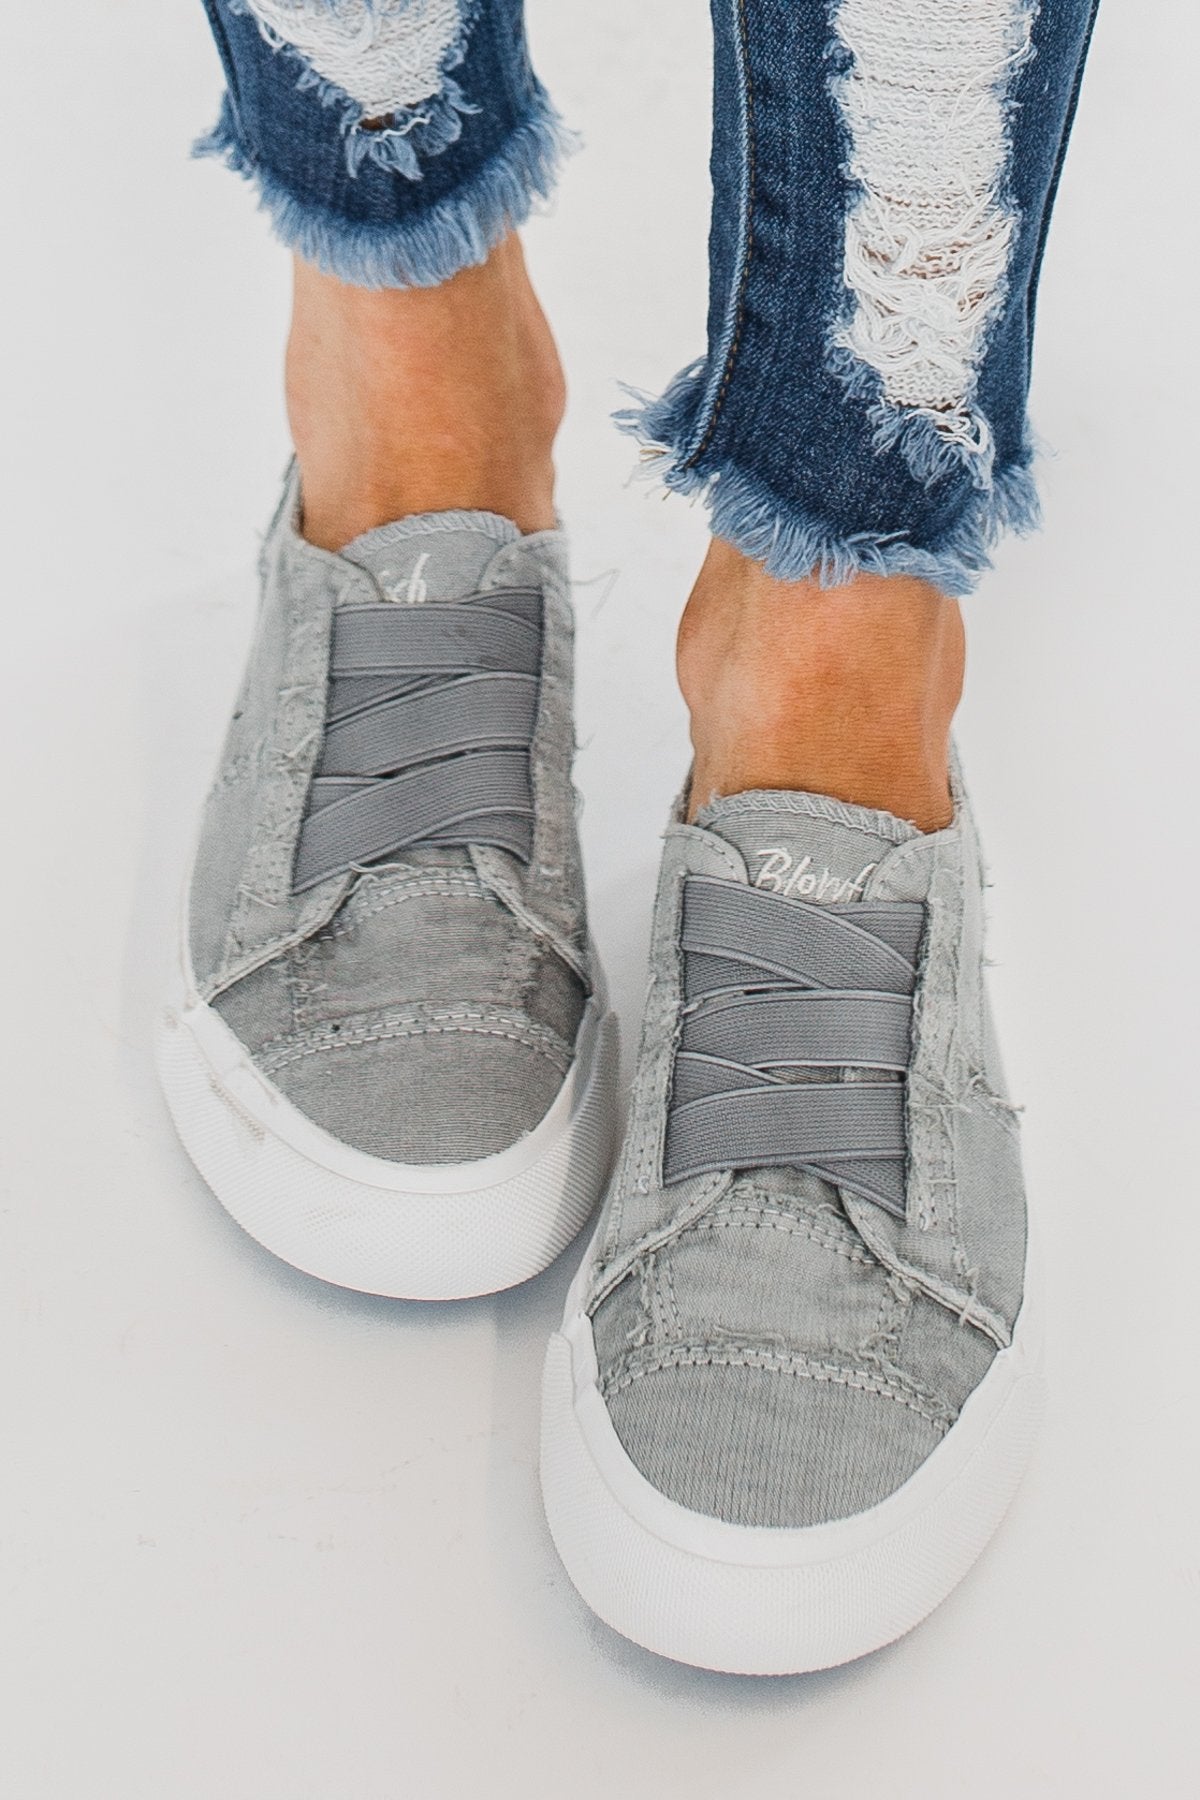 Blowfish Marley Sneakers- Sweet Grey